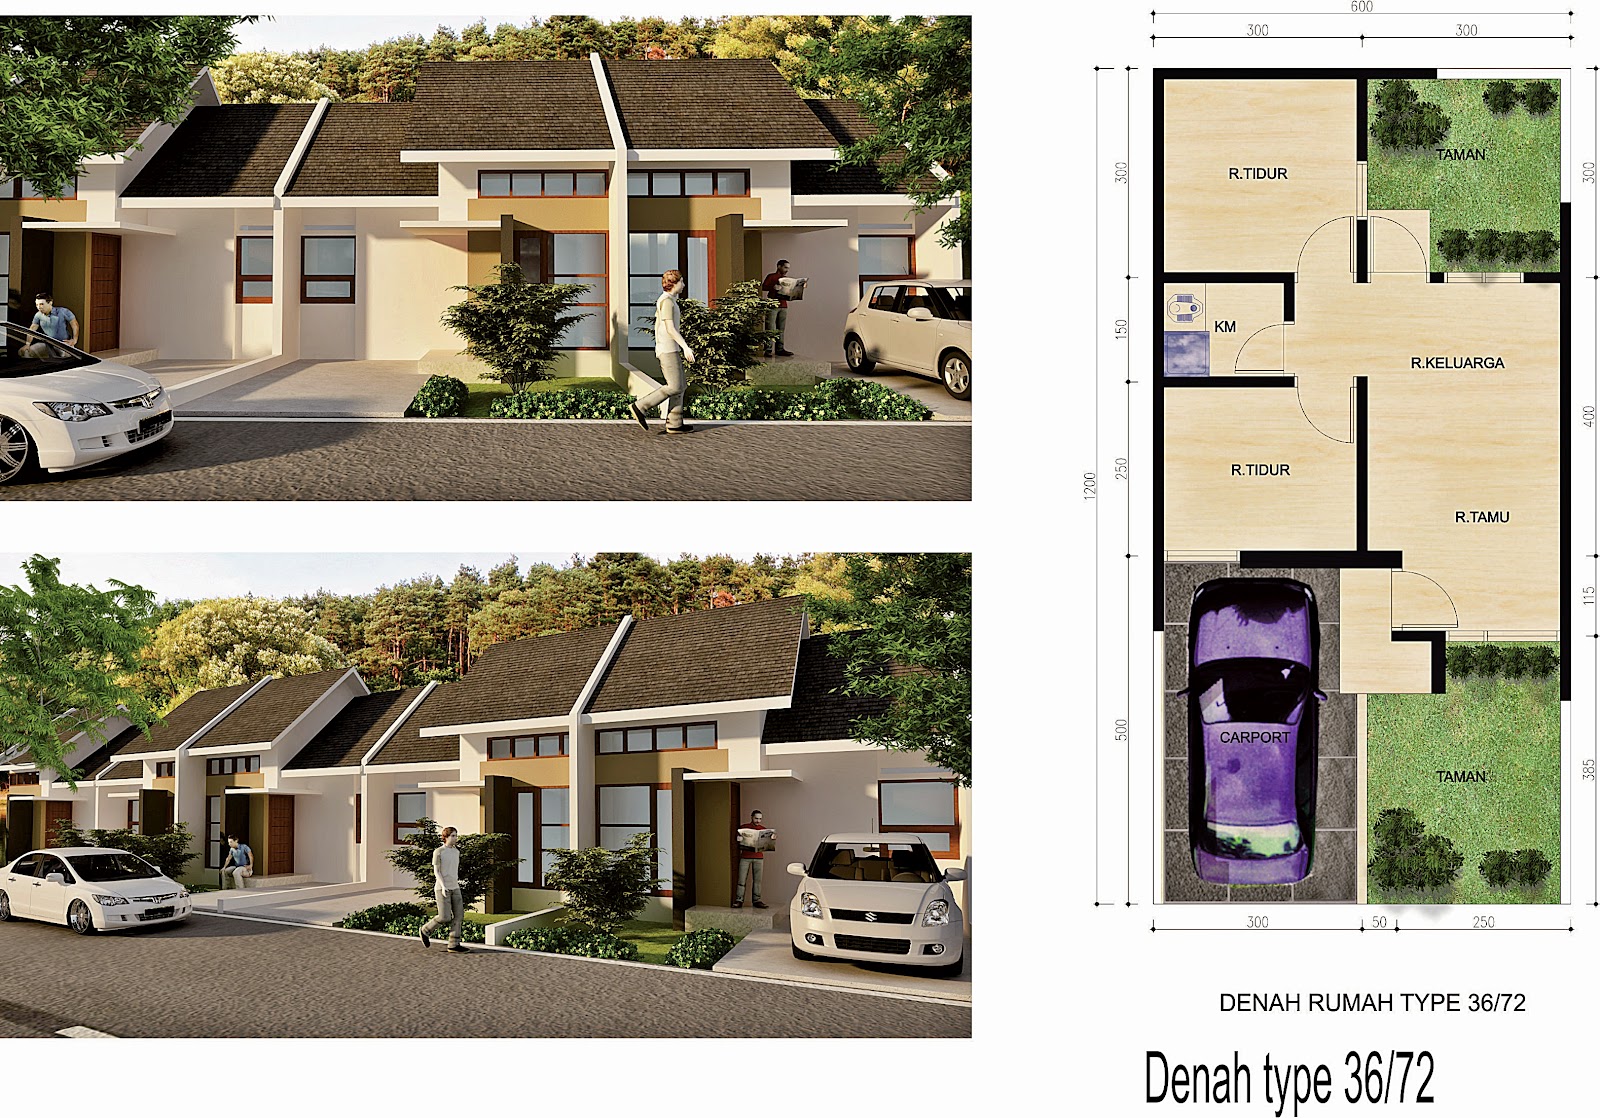  Gambar  Rumah  Minimalis  Type  45  Modern  Dicari 2019 Desain 